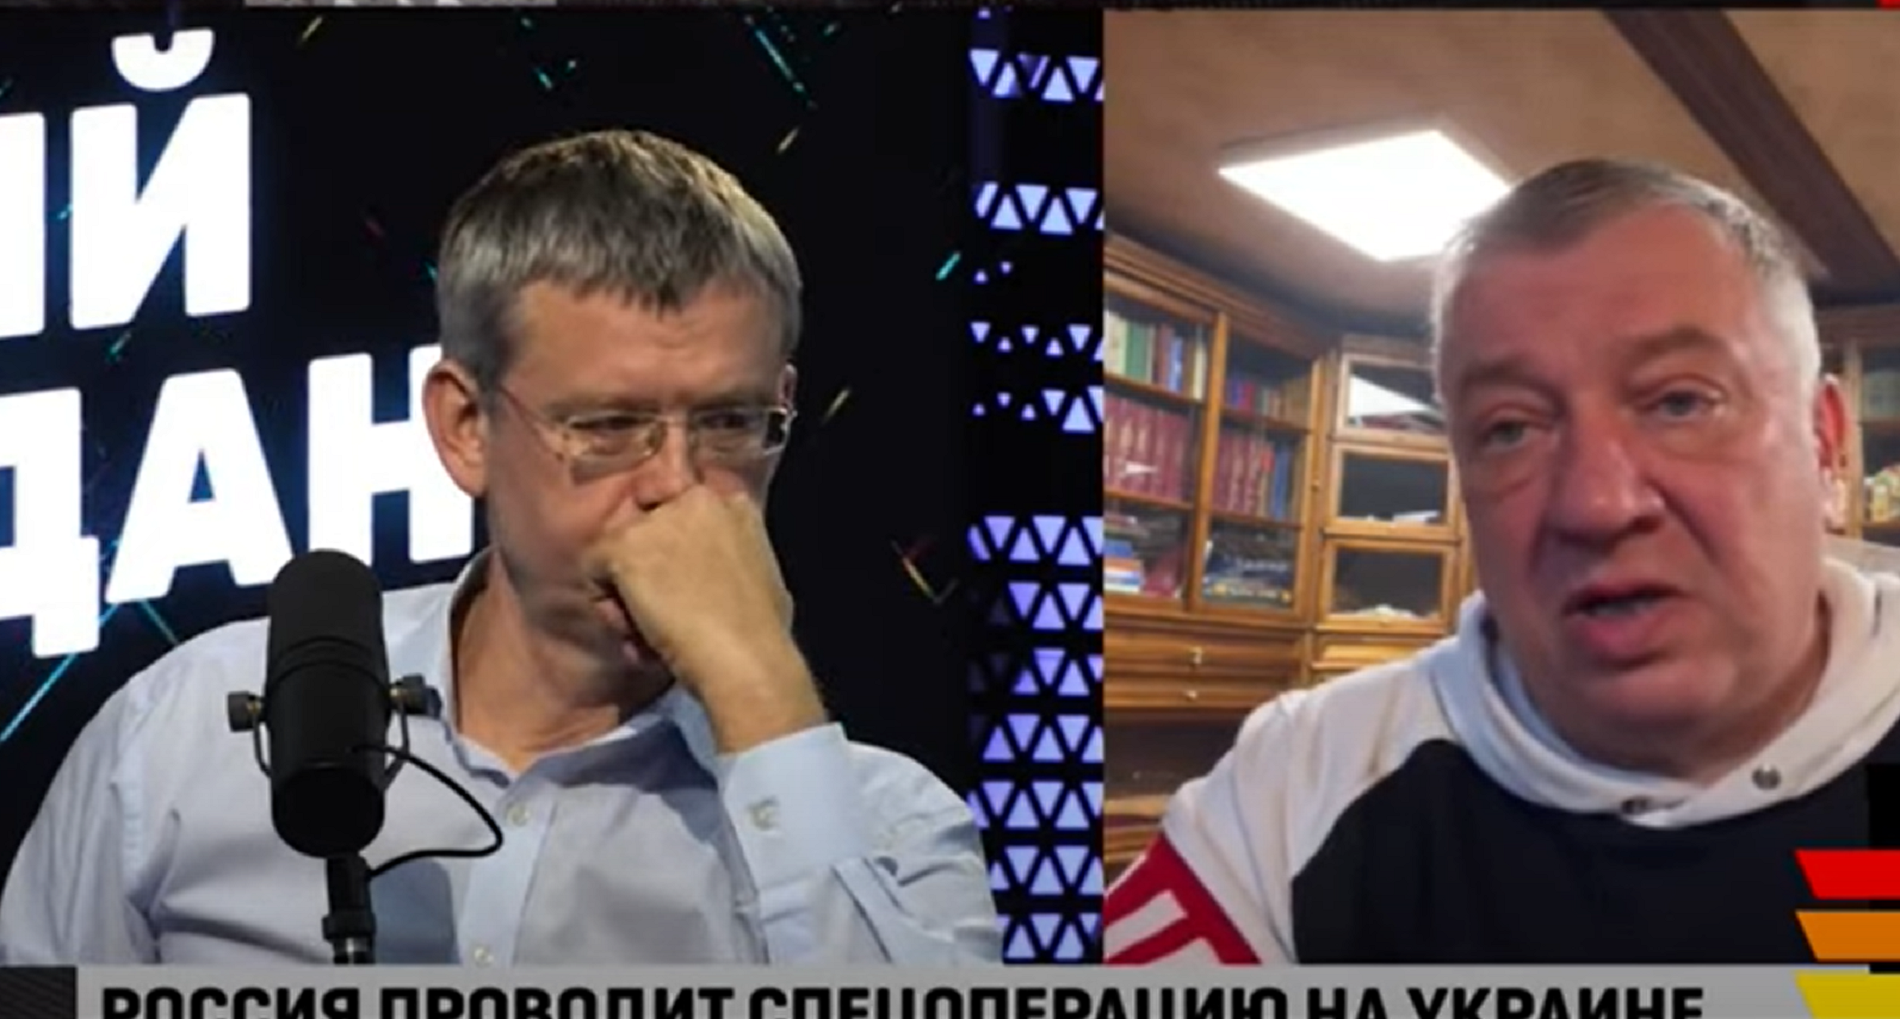 Estupor a la TV russa per les pèrdues a Ucraïna: "Què està passant?"